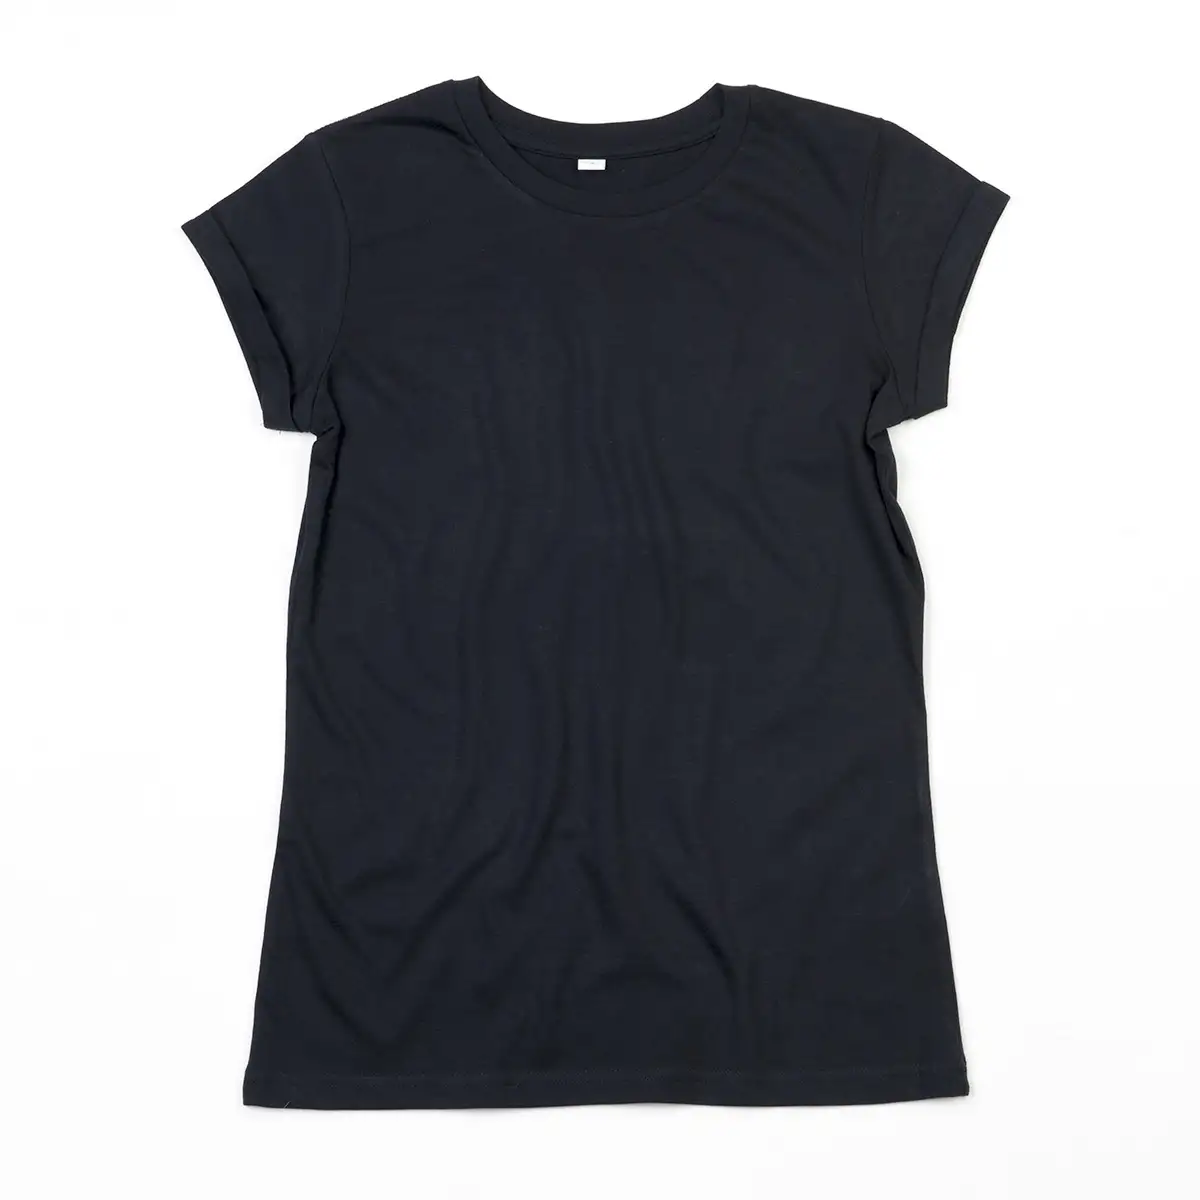 T-shirt Women's Roll Sleeve T